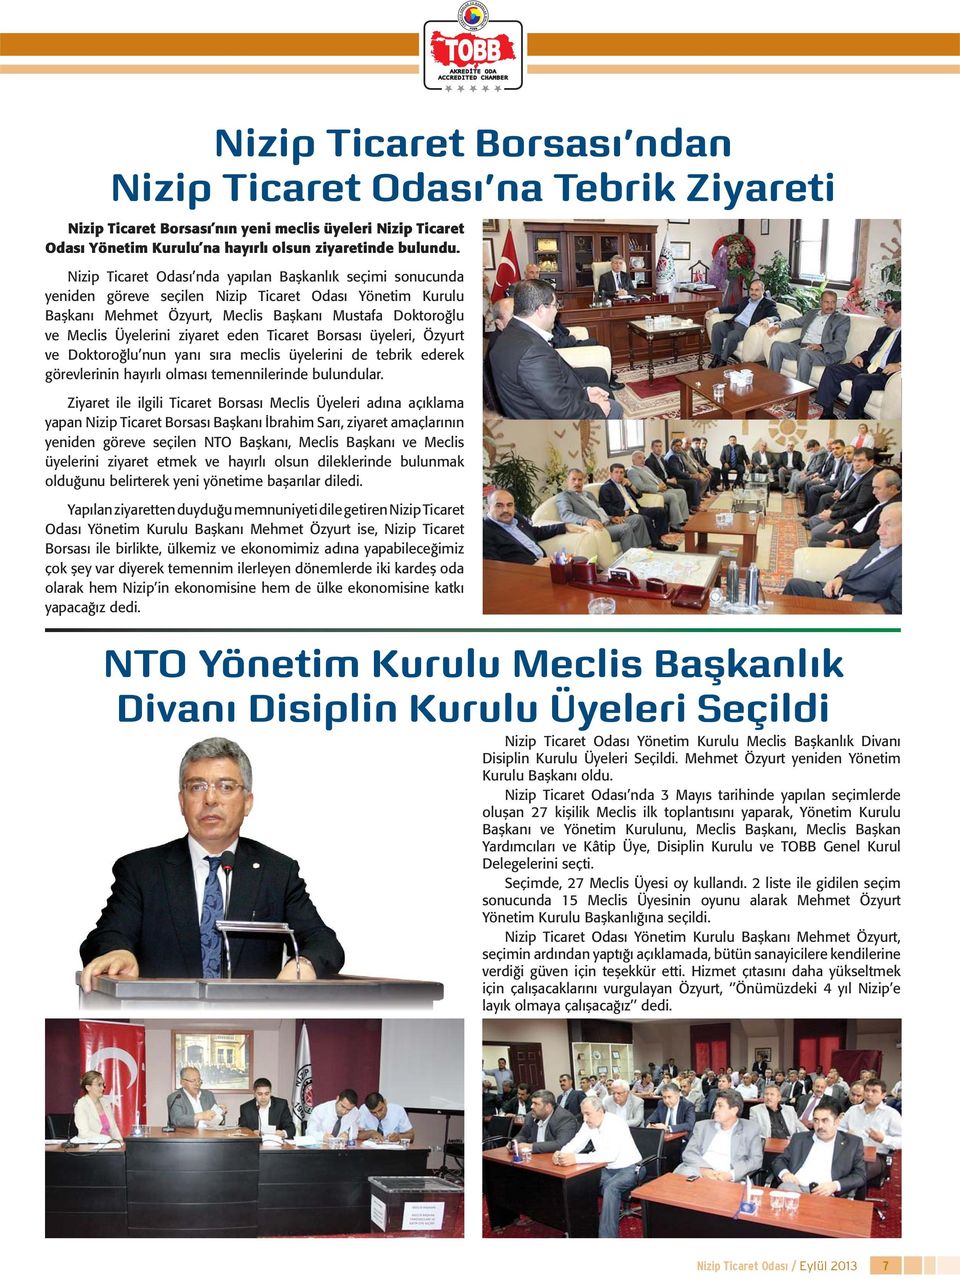 ziyaret eden Ticaret Borsası üyeleri, Özyurt ve Doktoroğlu nun yanı sıra meclis üyelerini de tebrik ederek görevlerinin hayırlı olması temennilerinde bulundular.